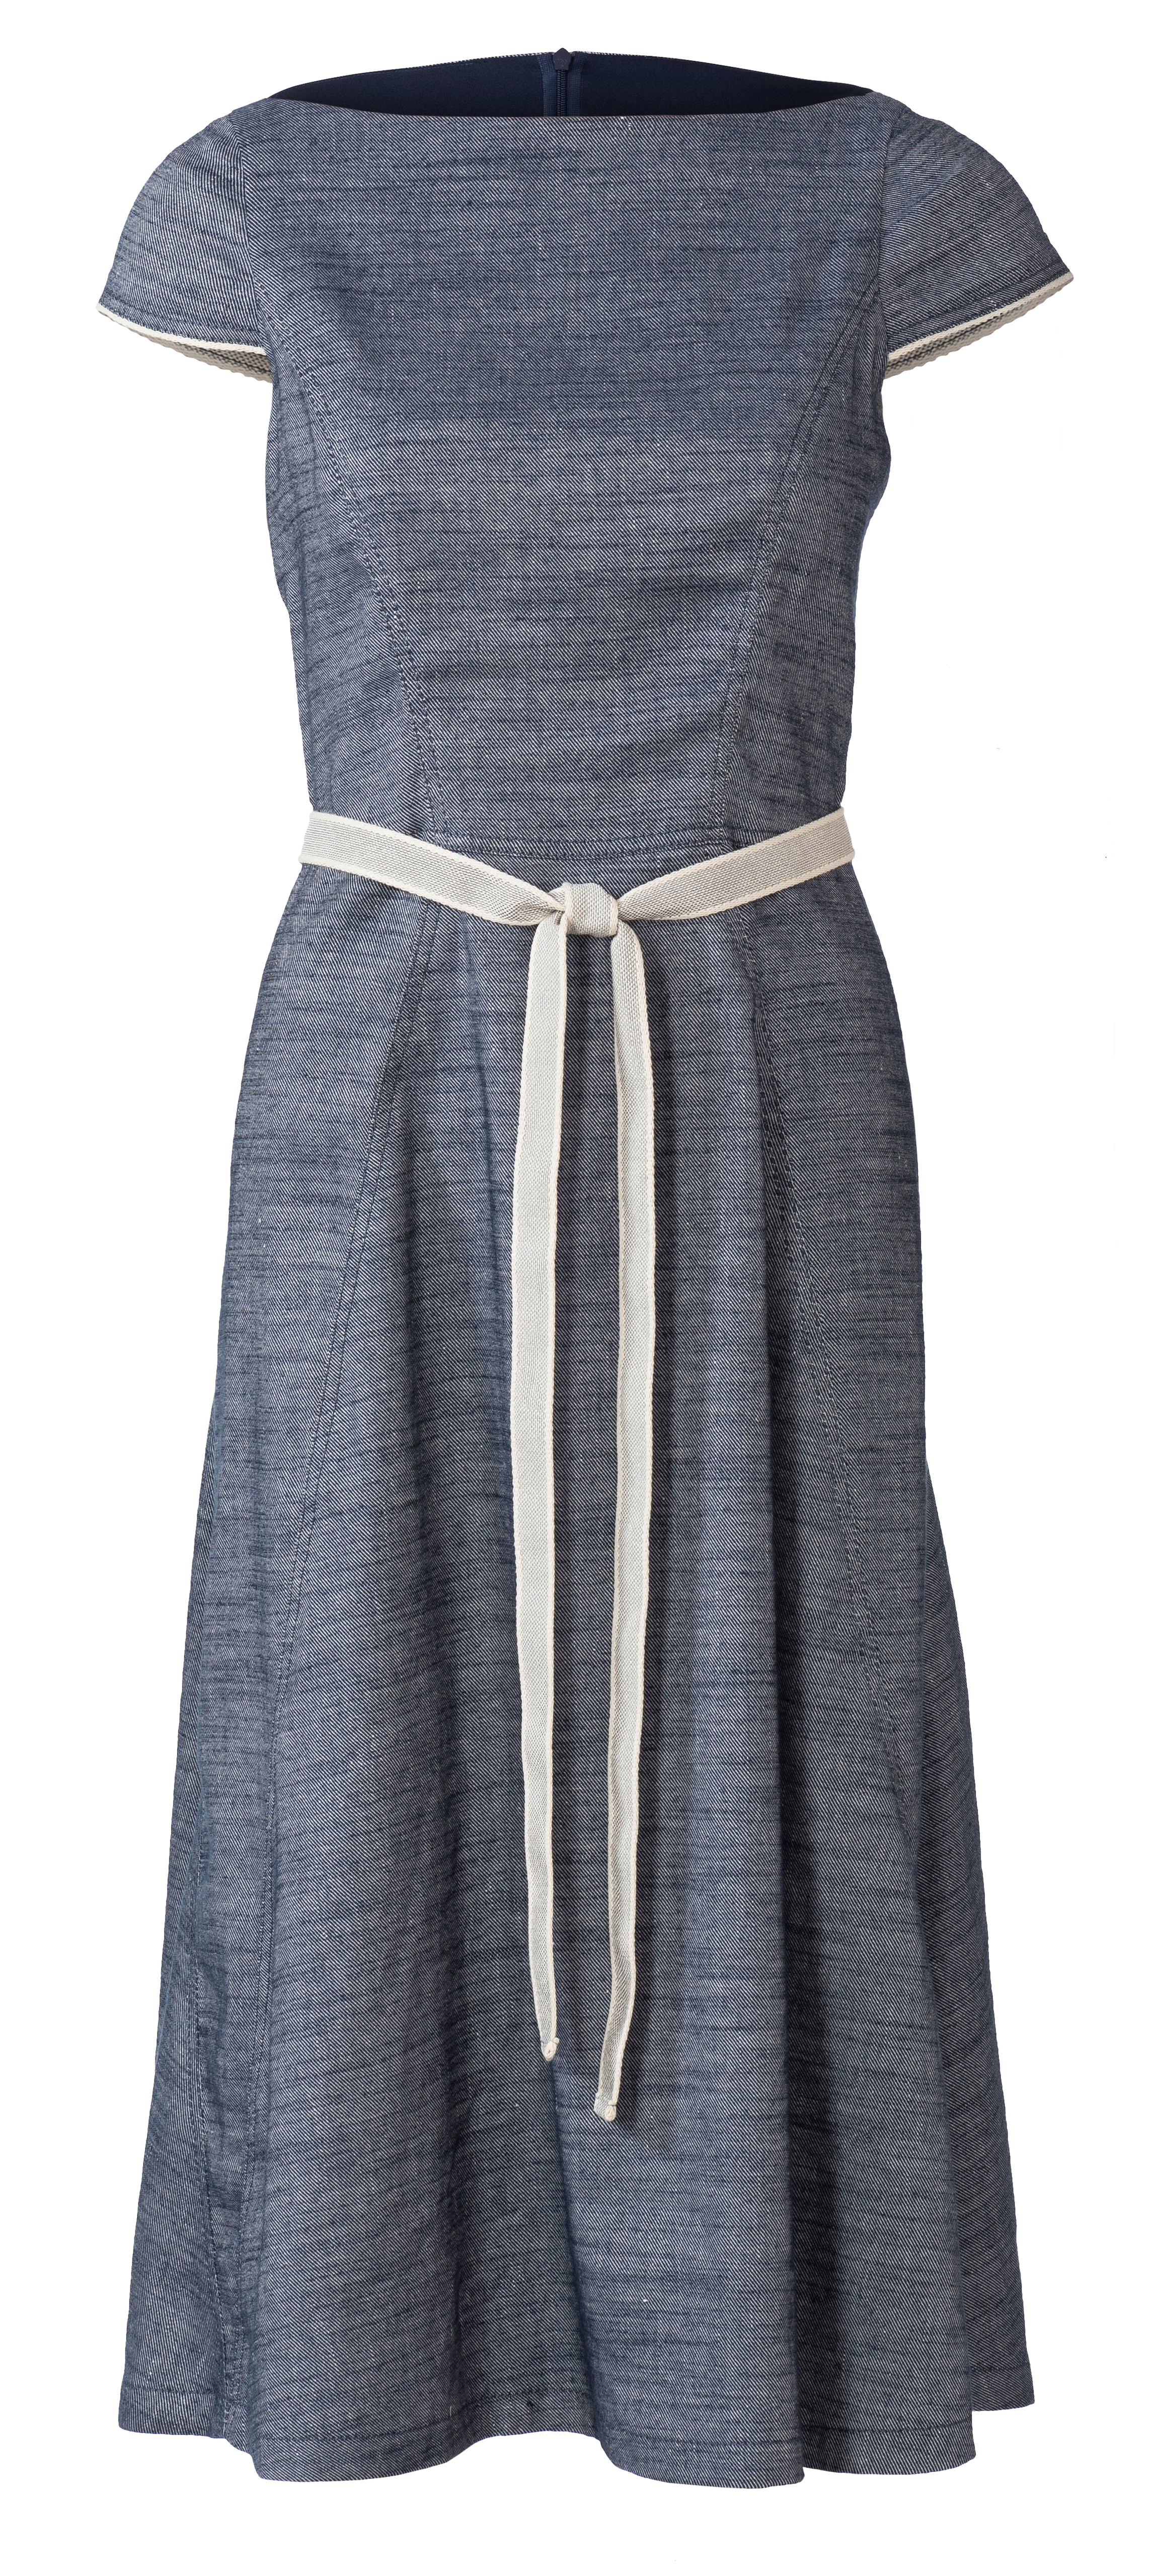 Burda B6209 Dress Sewing Pattern